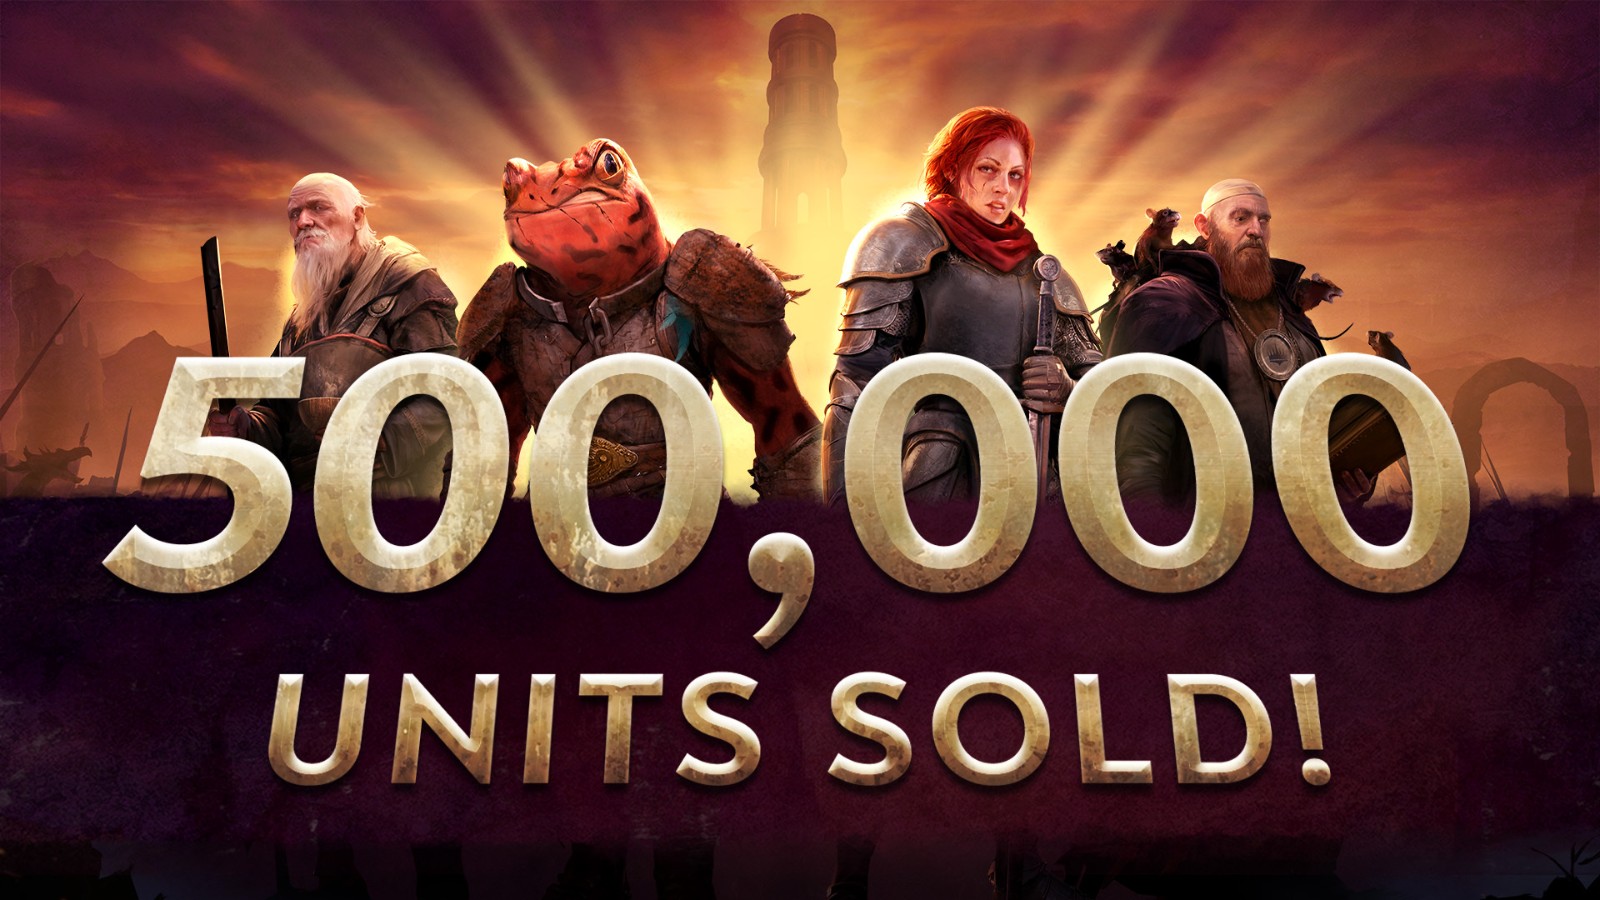 回合制策略冒险游戏《征服之歌》销量突破50万 首个DLC今年秋季发售